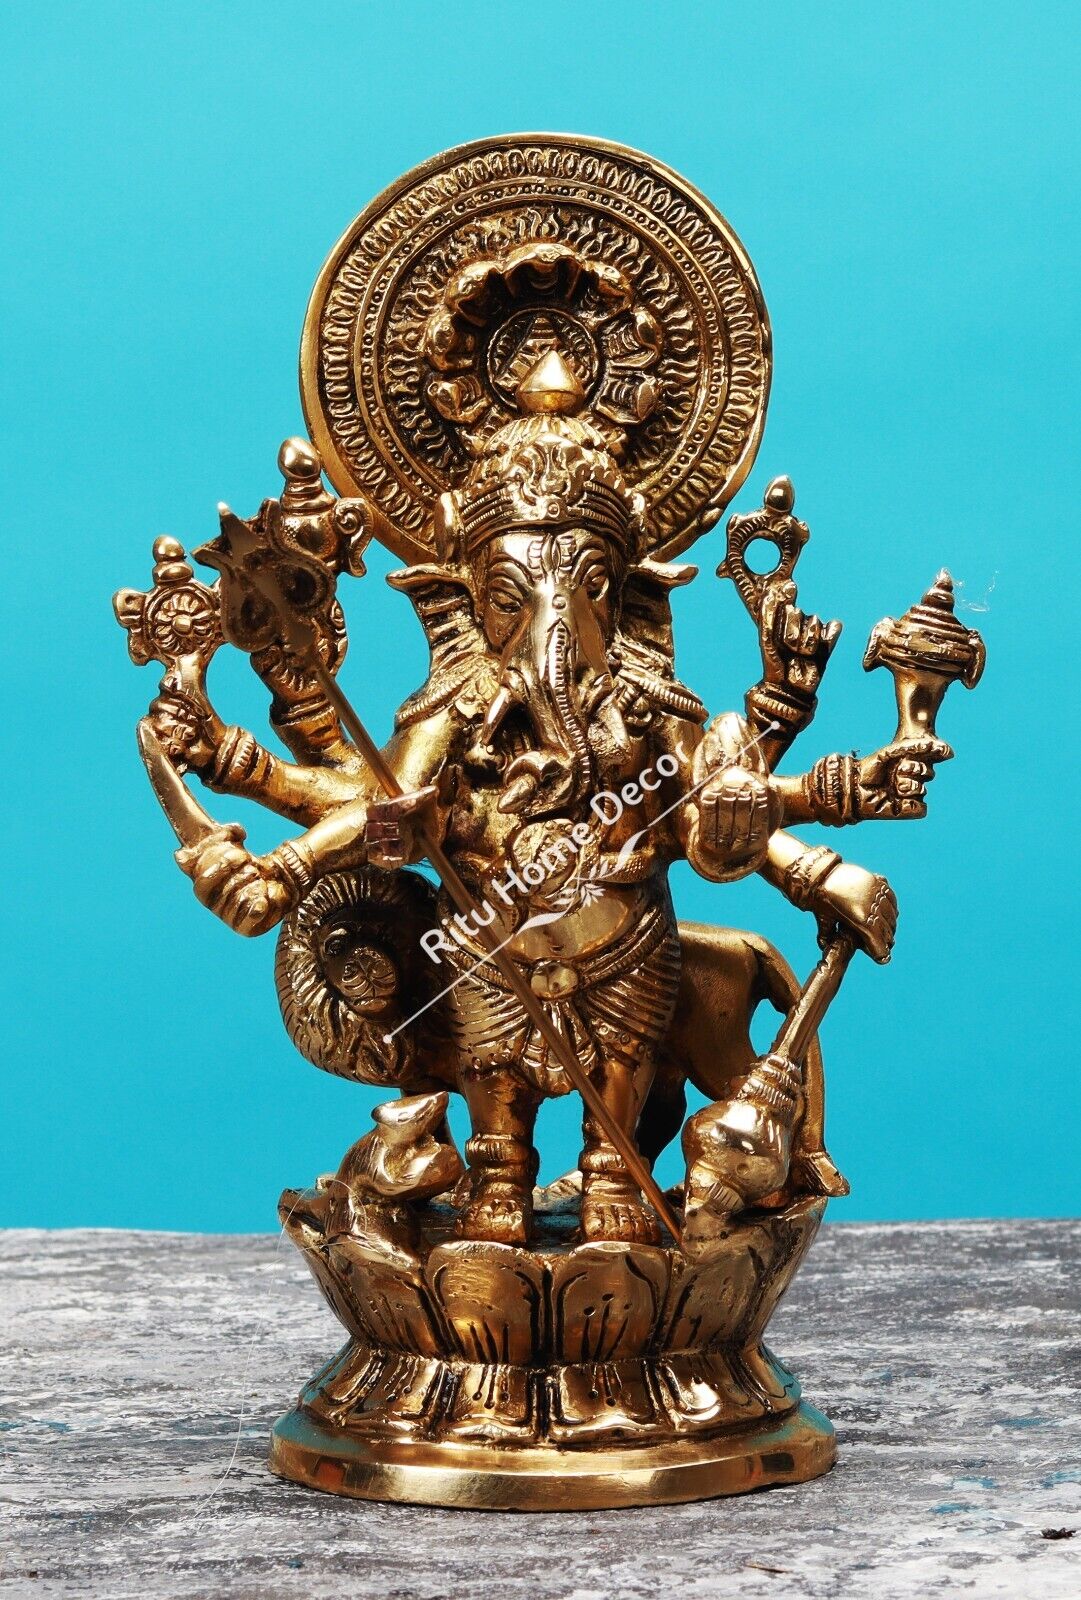 Brass Lord Ganesha Golden Statue Ganapathy Idol Dhristi Ganesh Figurine Decor